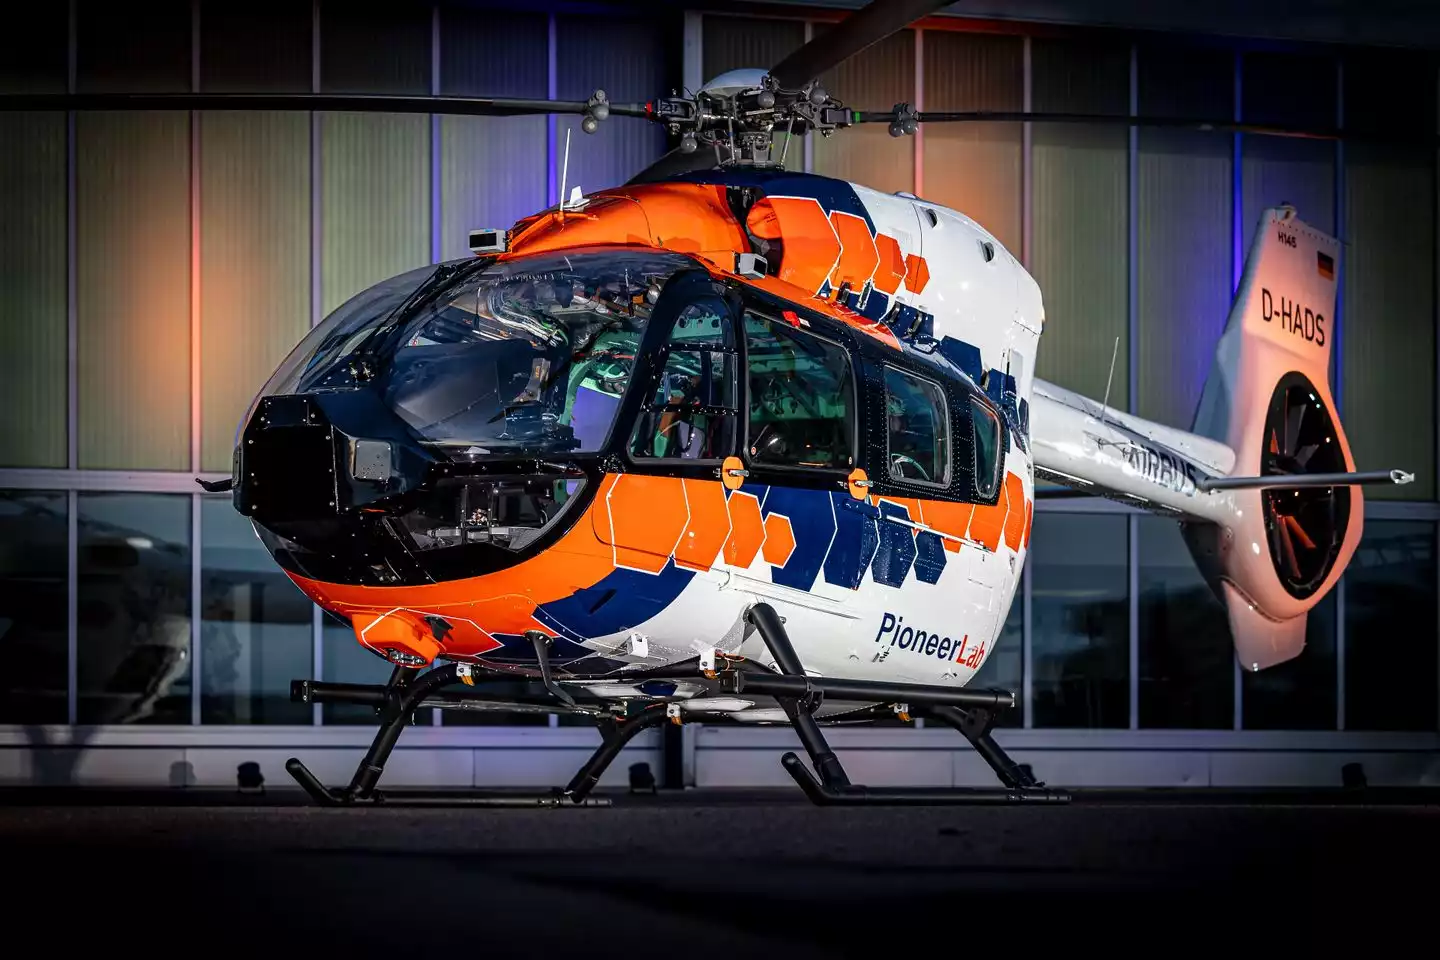 Airbus Helicopters dévoile PioneerLab, son nouveau démonstrateur technologique bimoteur basé sur la plateforme H145